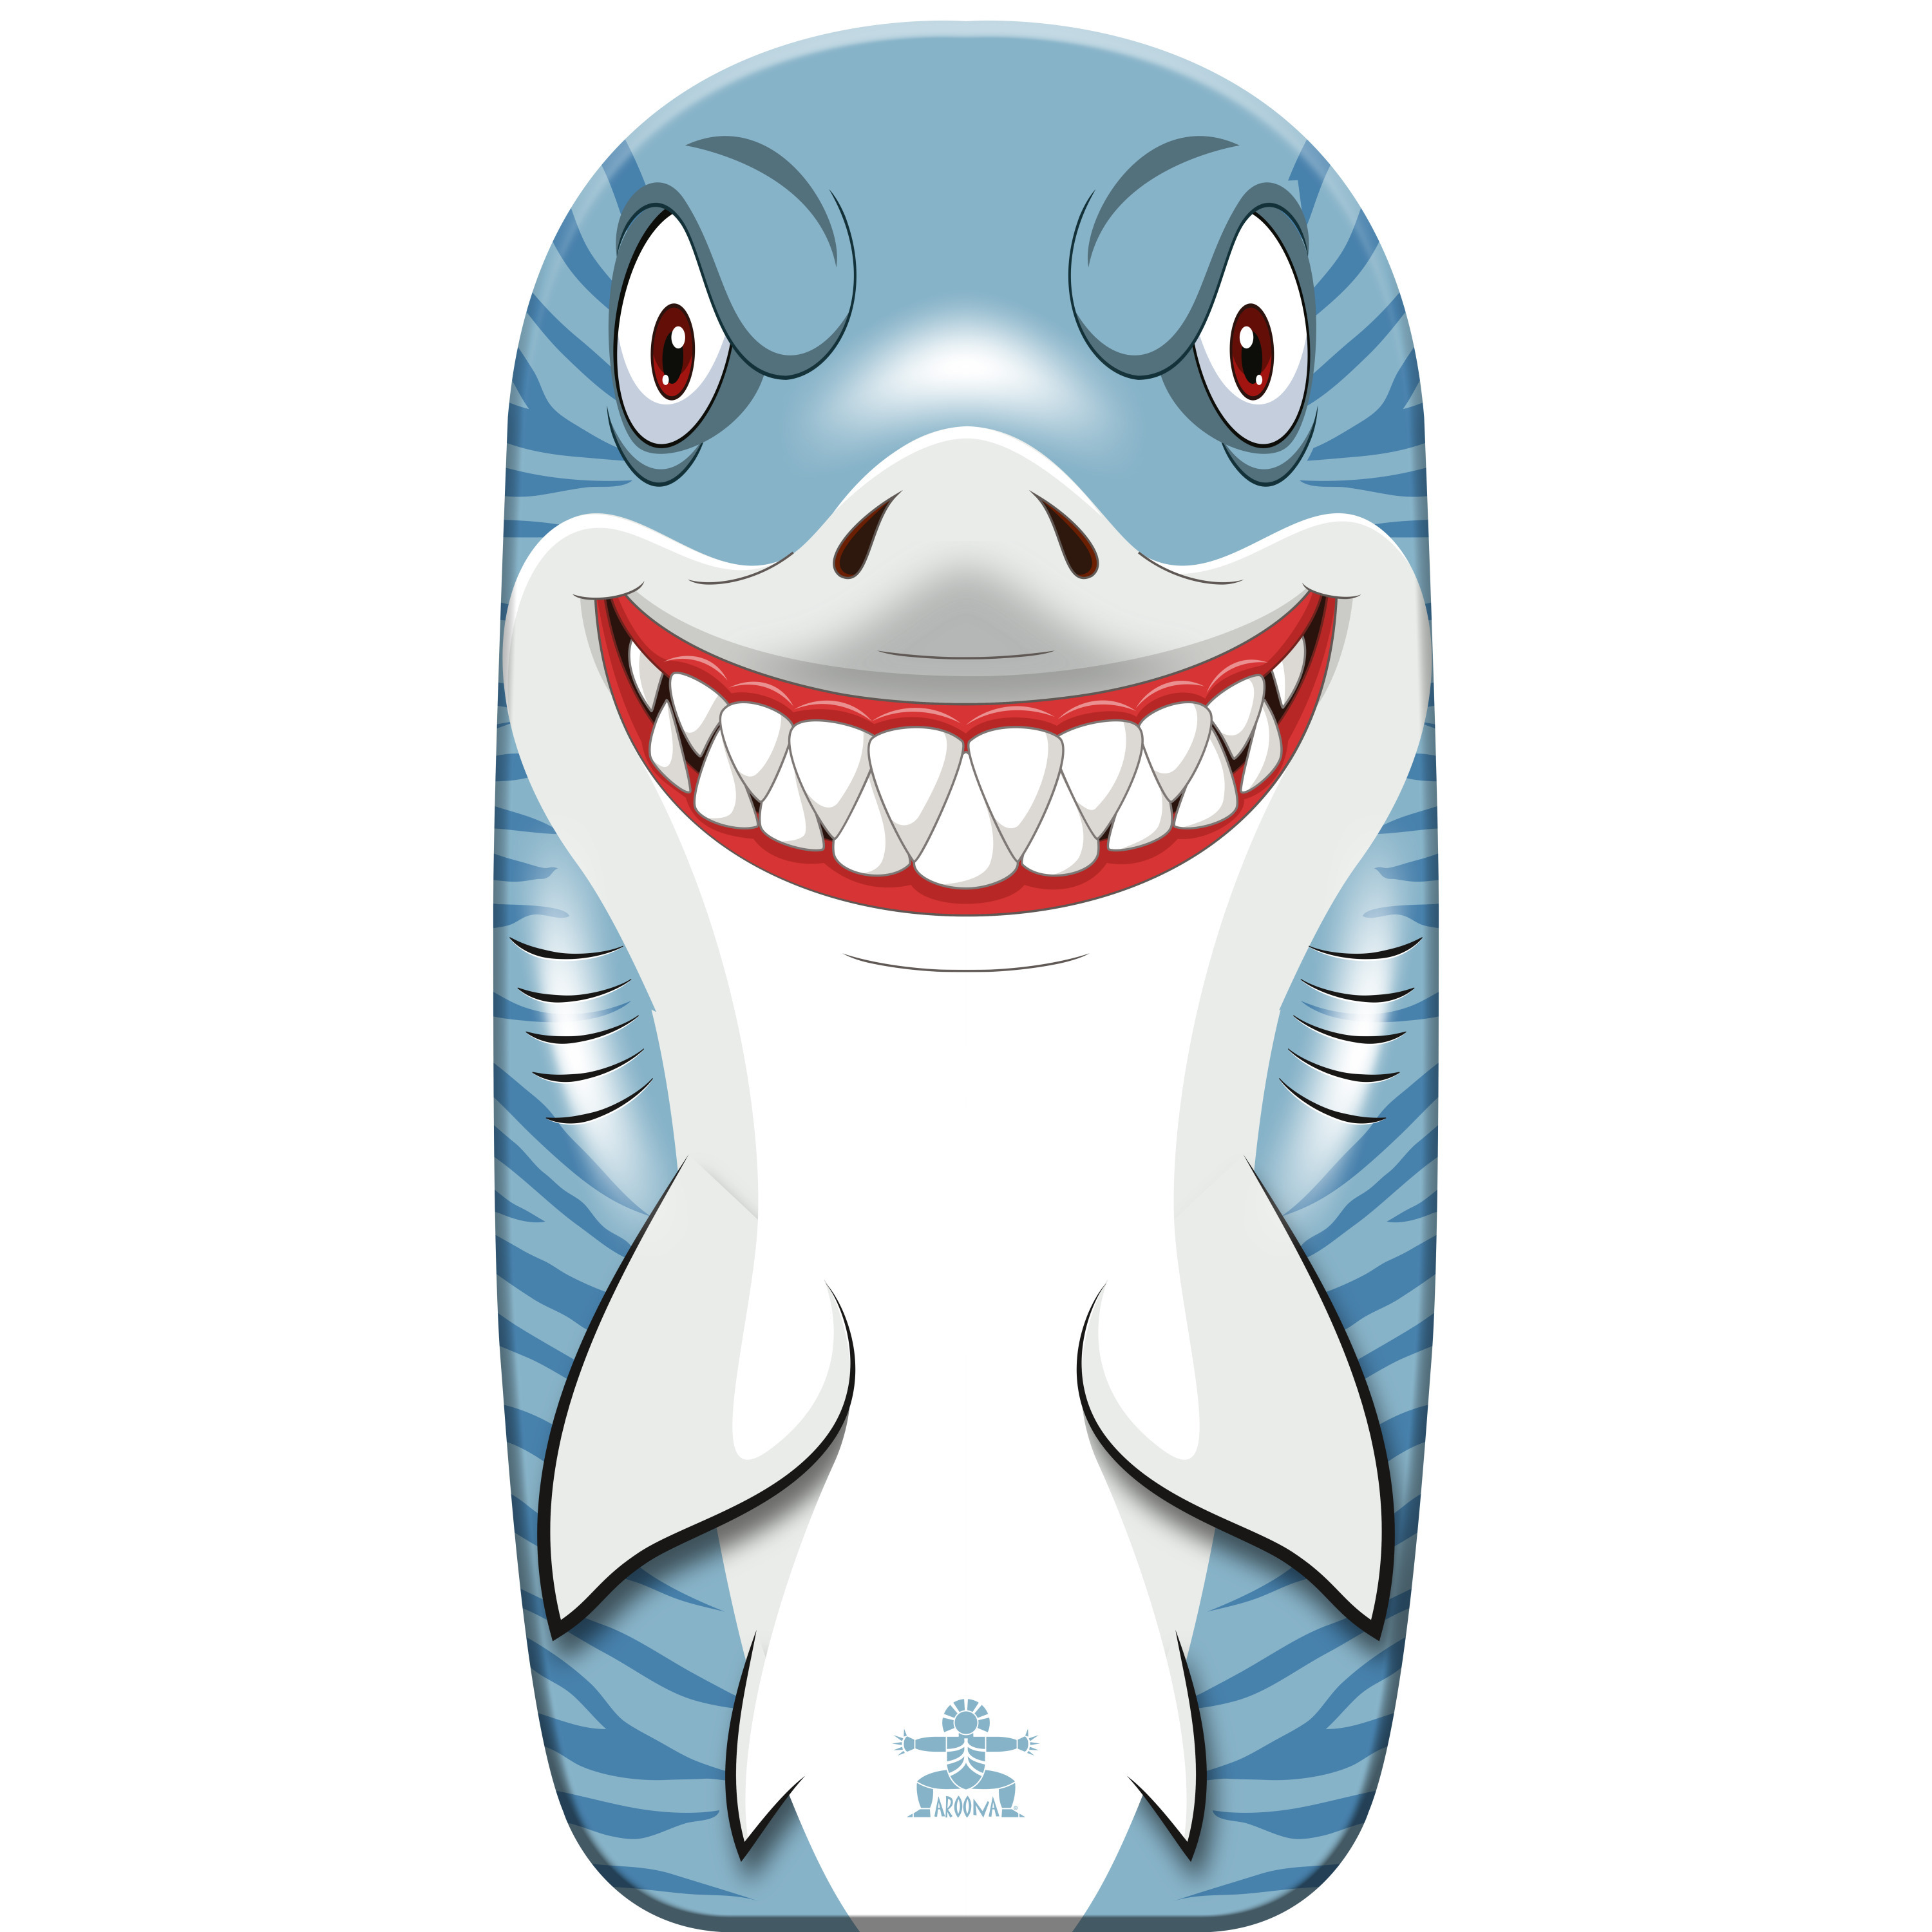 Gebro Bodyboard haai - kunststof - lichtblauw/wit - 82 x 46 cm -